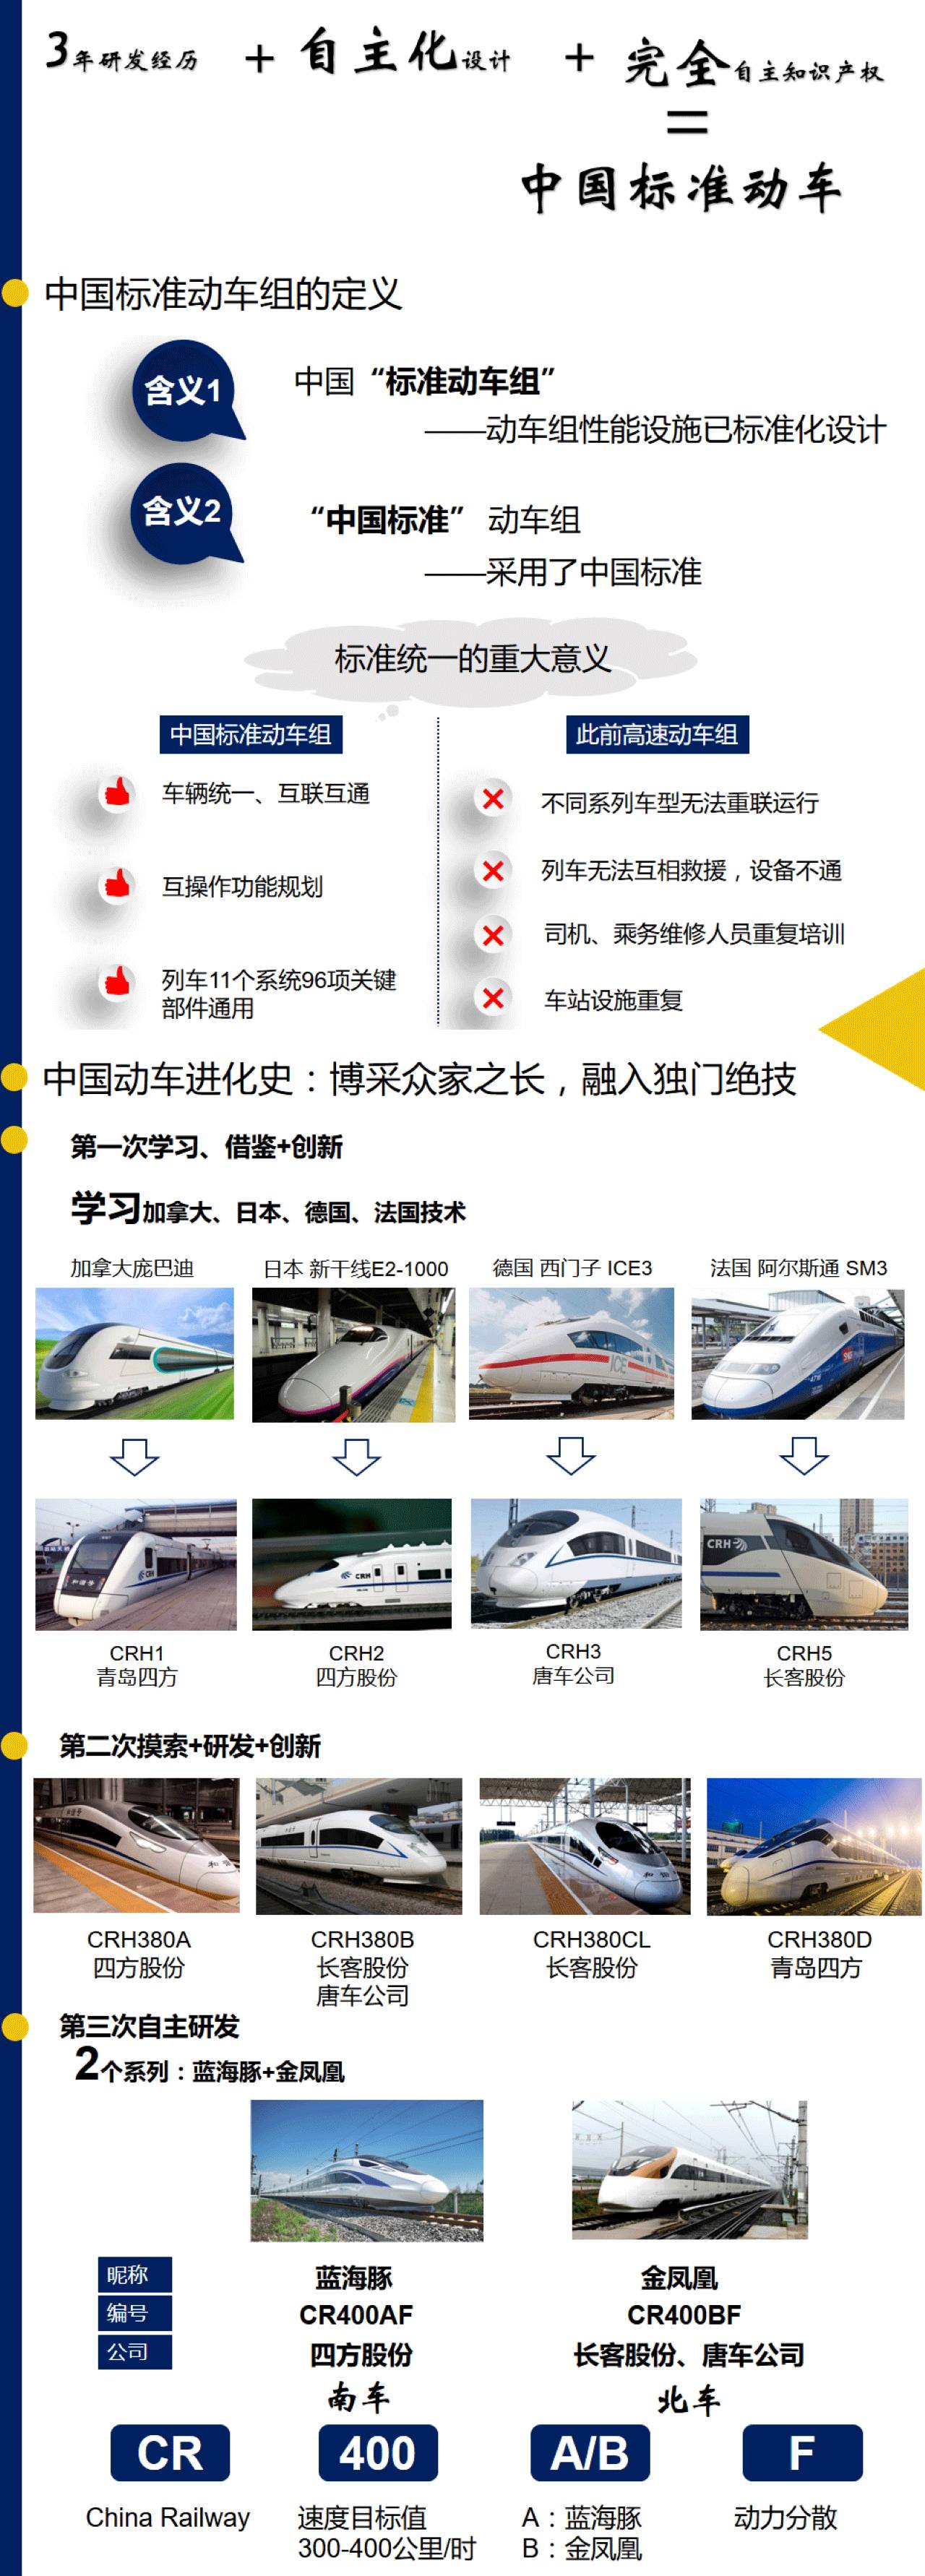 安信策略:中国高铁驶入复兴号时代 相关股票